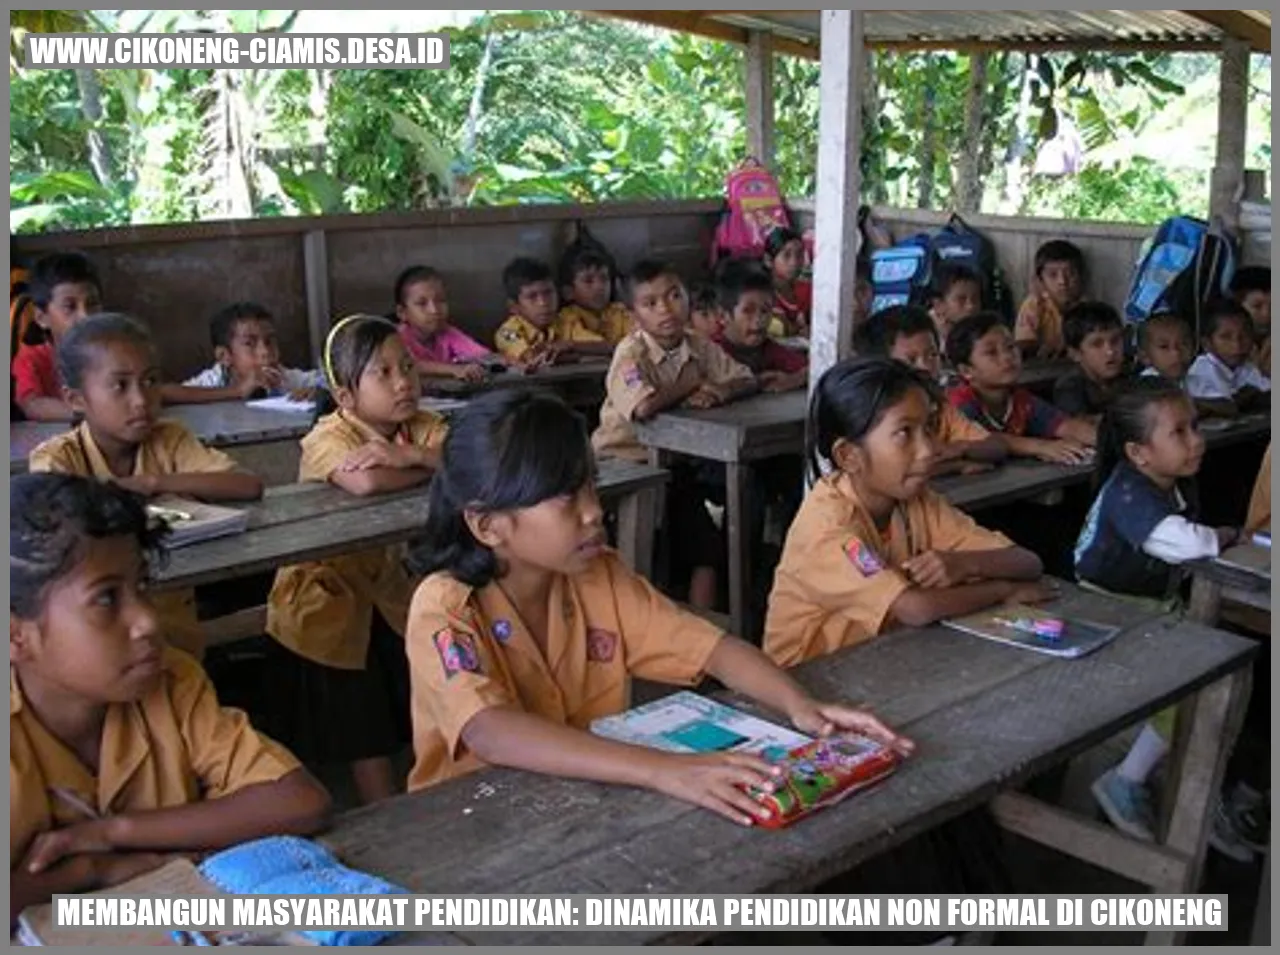 Membangun Masyarakat Pendidikan: Dinamika Pendidikan Non Formal di Cikoneng